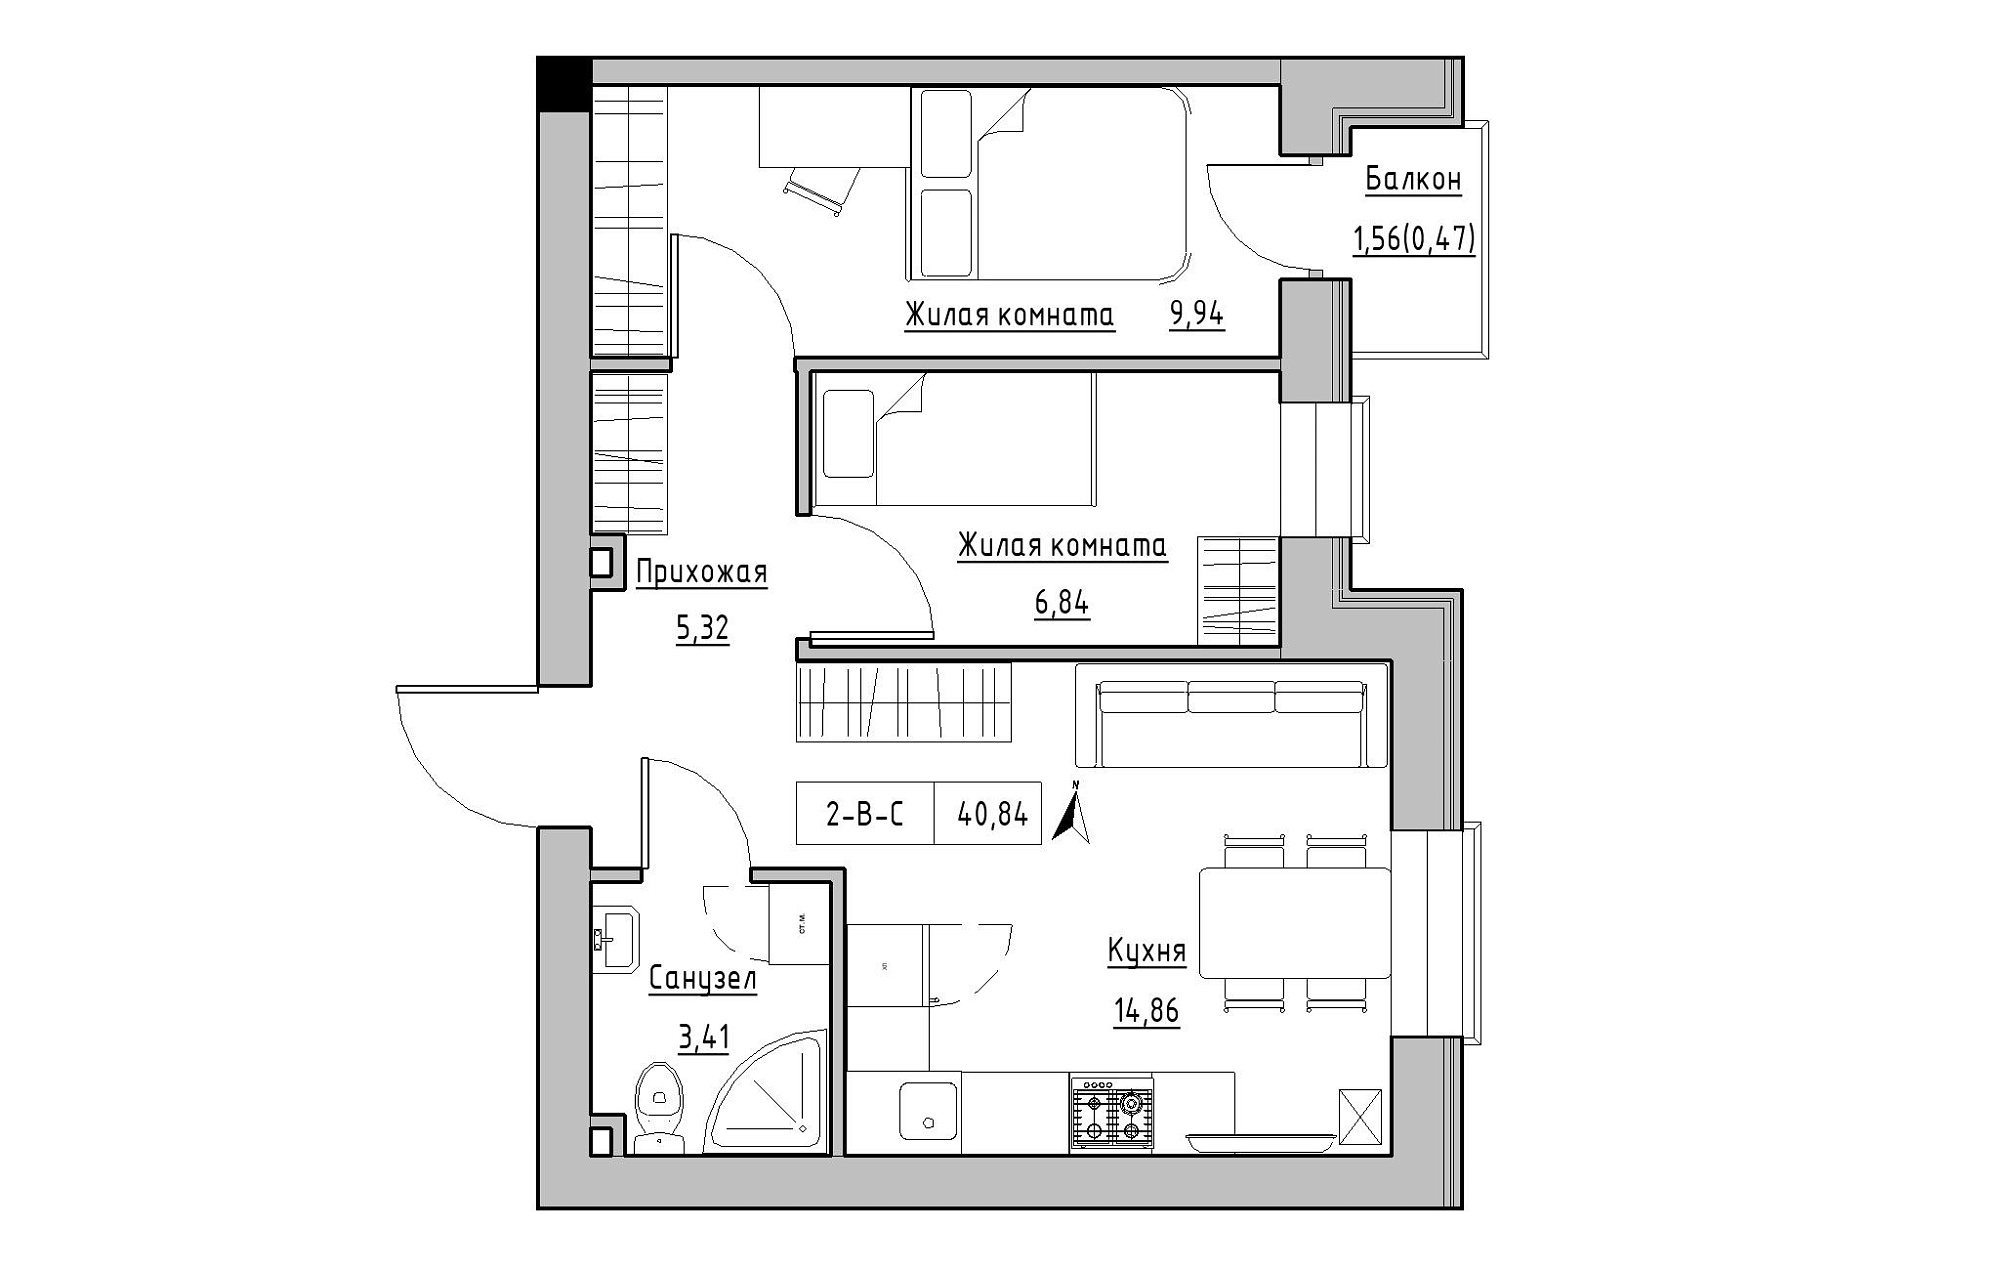 Планировка 2-к квартира площей 40.84м2, KS-019-03/0006.